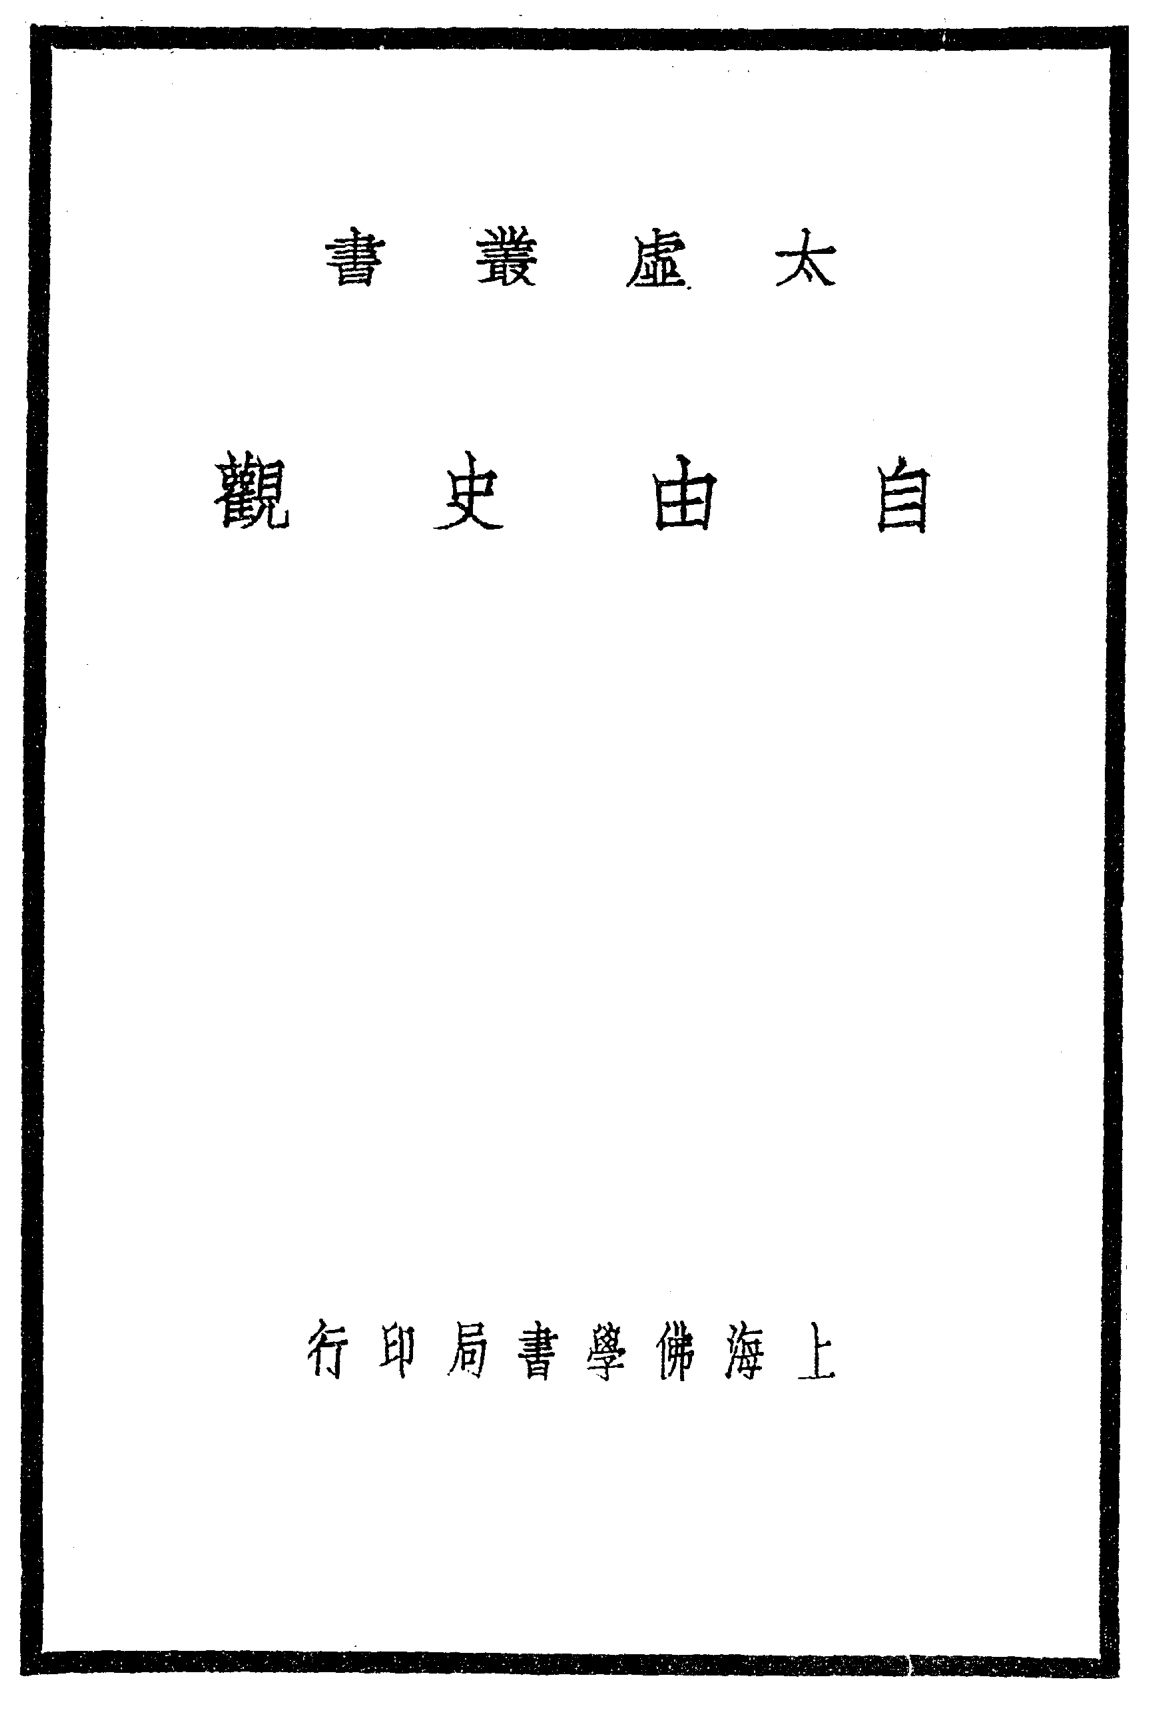 File:Ziyou shiguan 1932.png